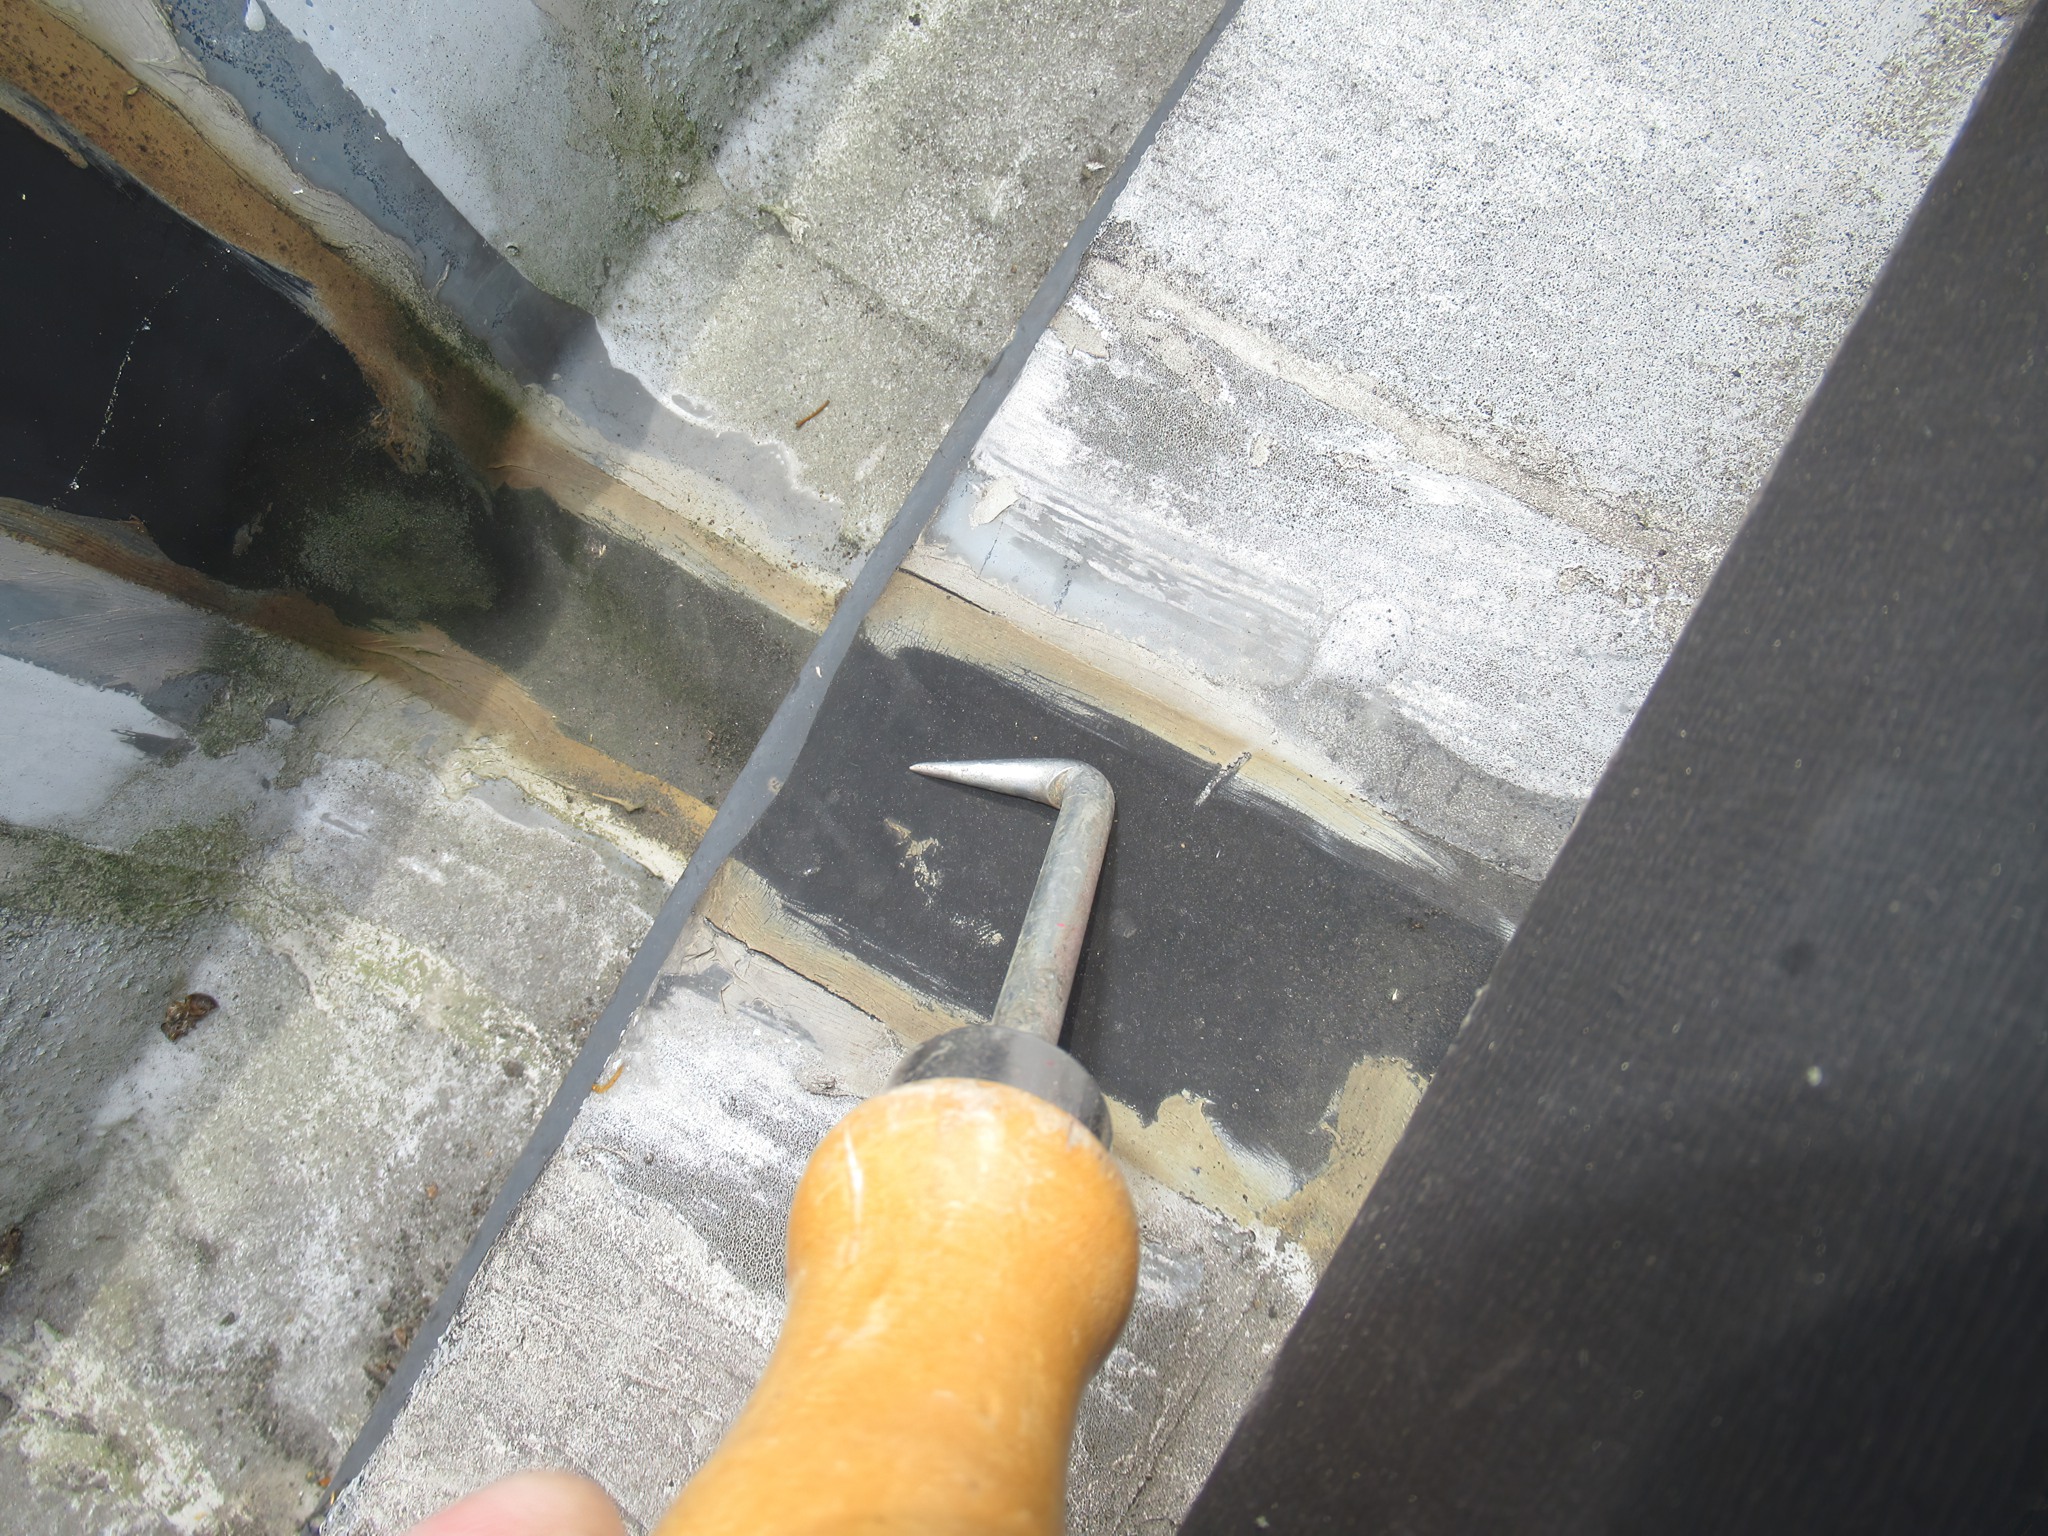 Flachdachleckortung defekte Abdichtung Dach undichtes Dach Dachabdichtung undicht